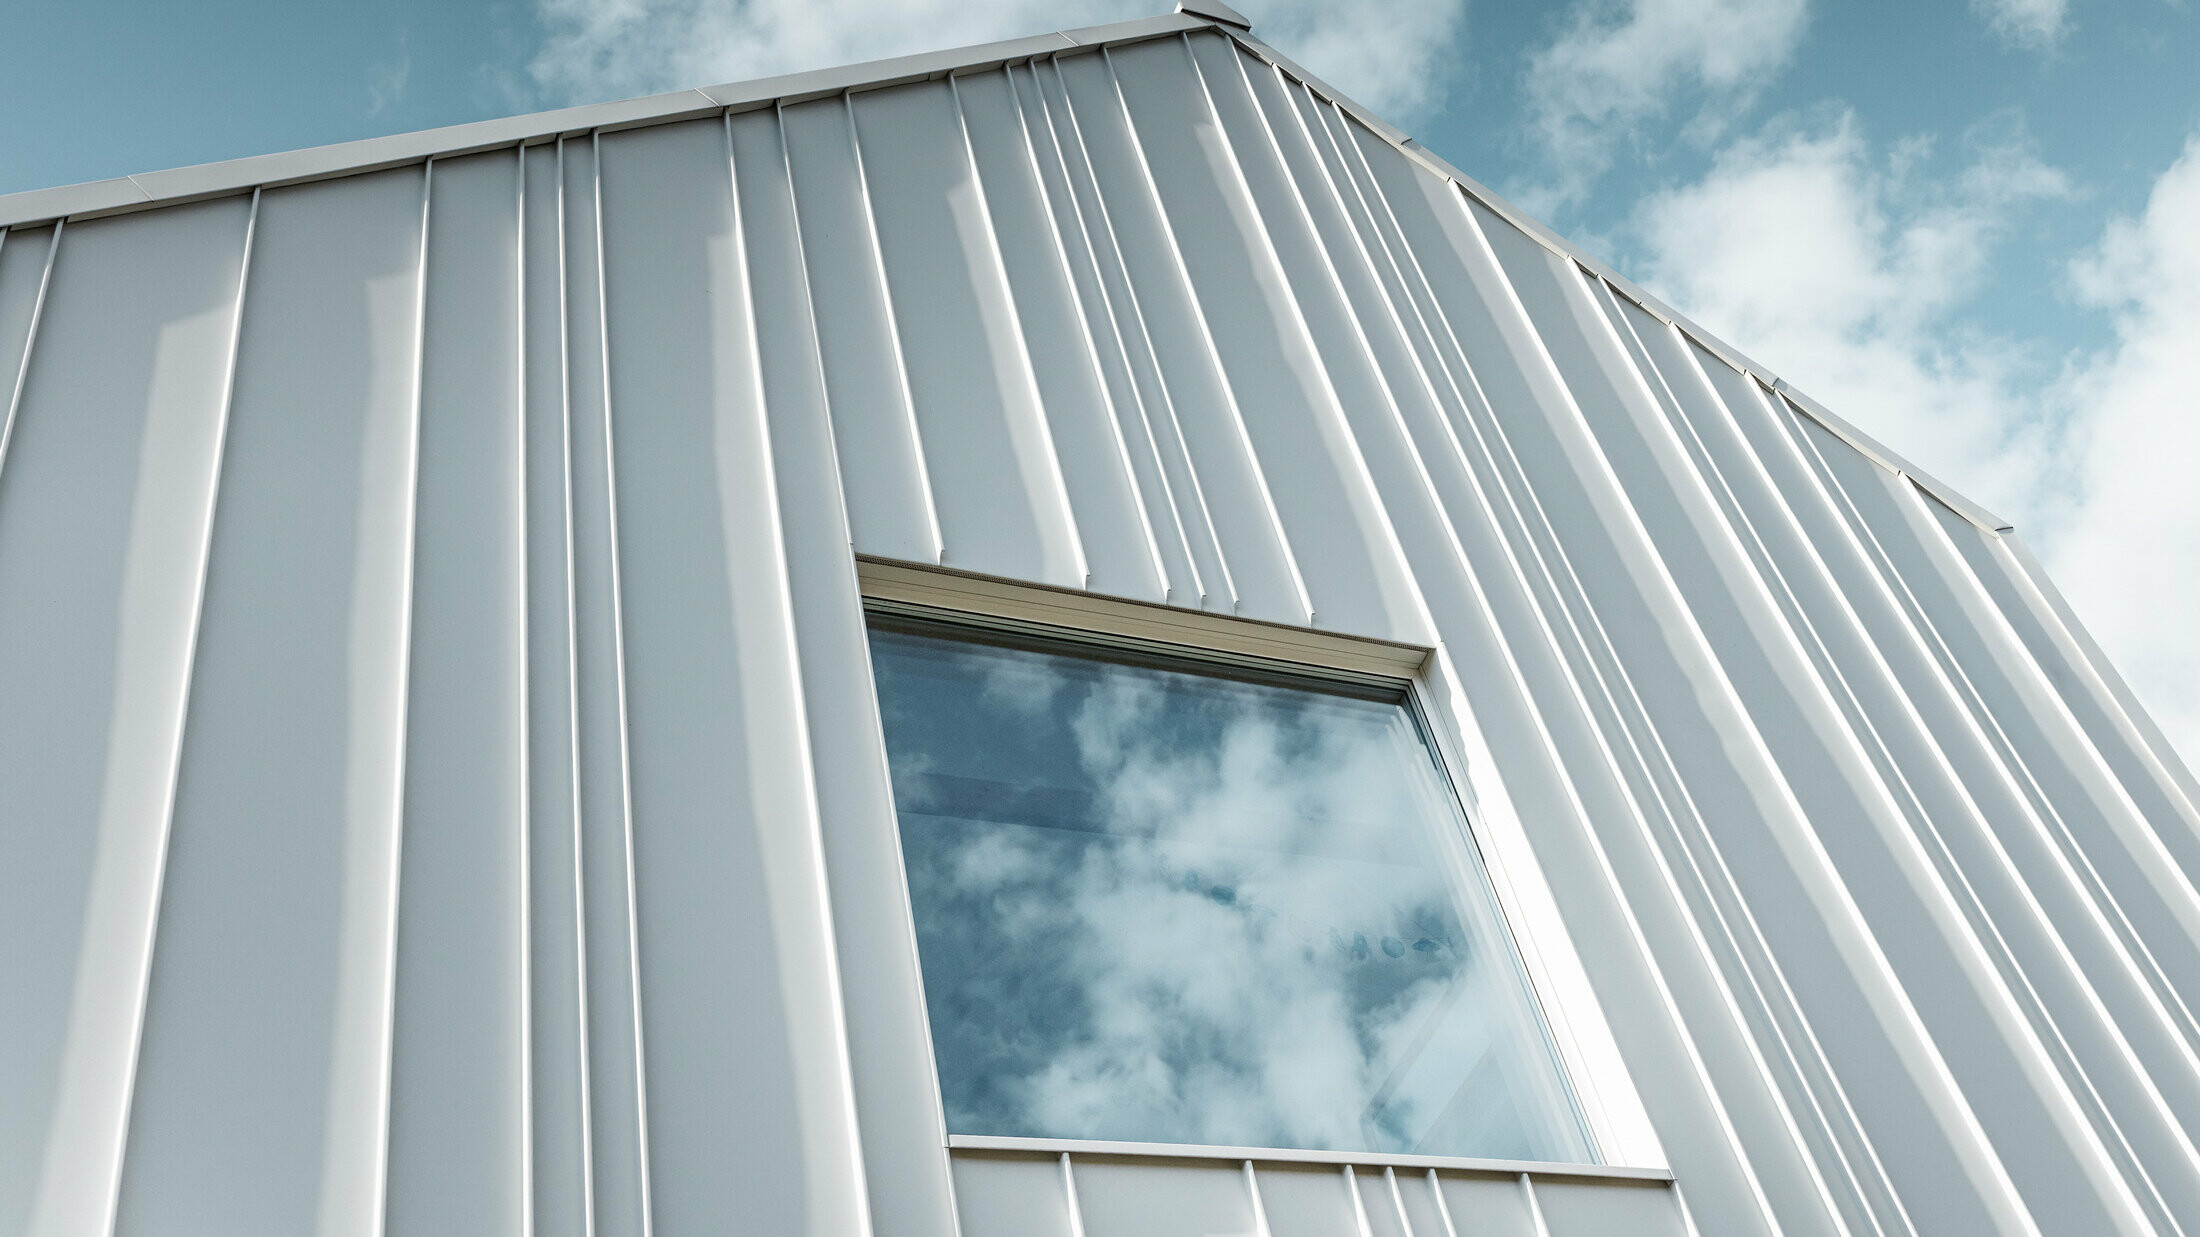 weißes PREFALZ als Winkelstehfalz an der Fassade mit unterschiedlichen Scharenbreiten und einem Fenster